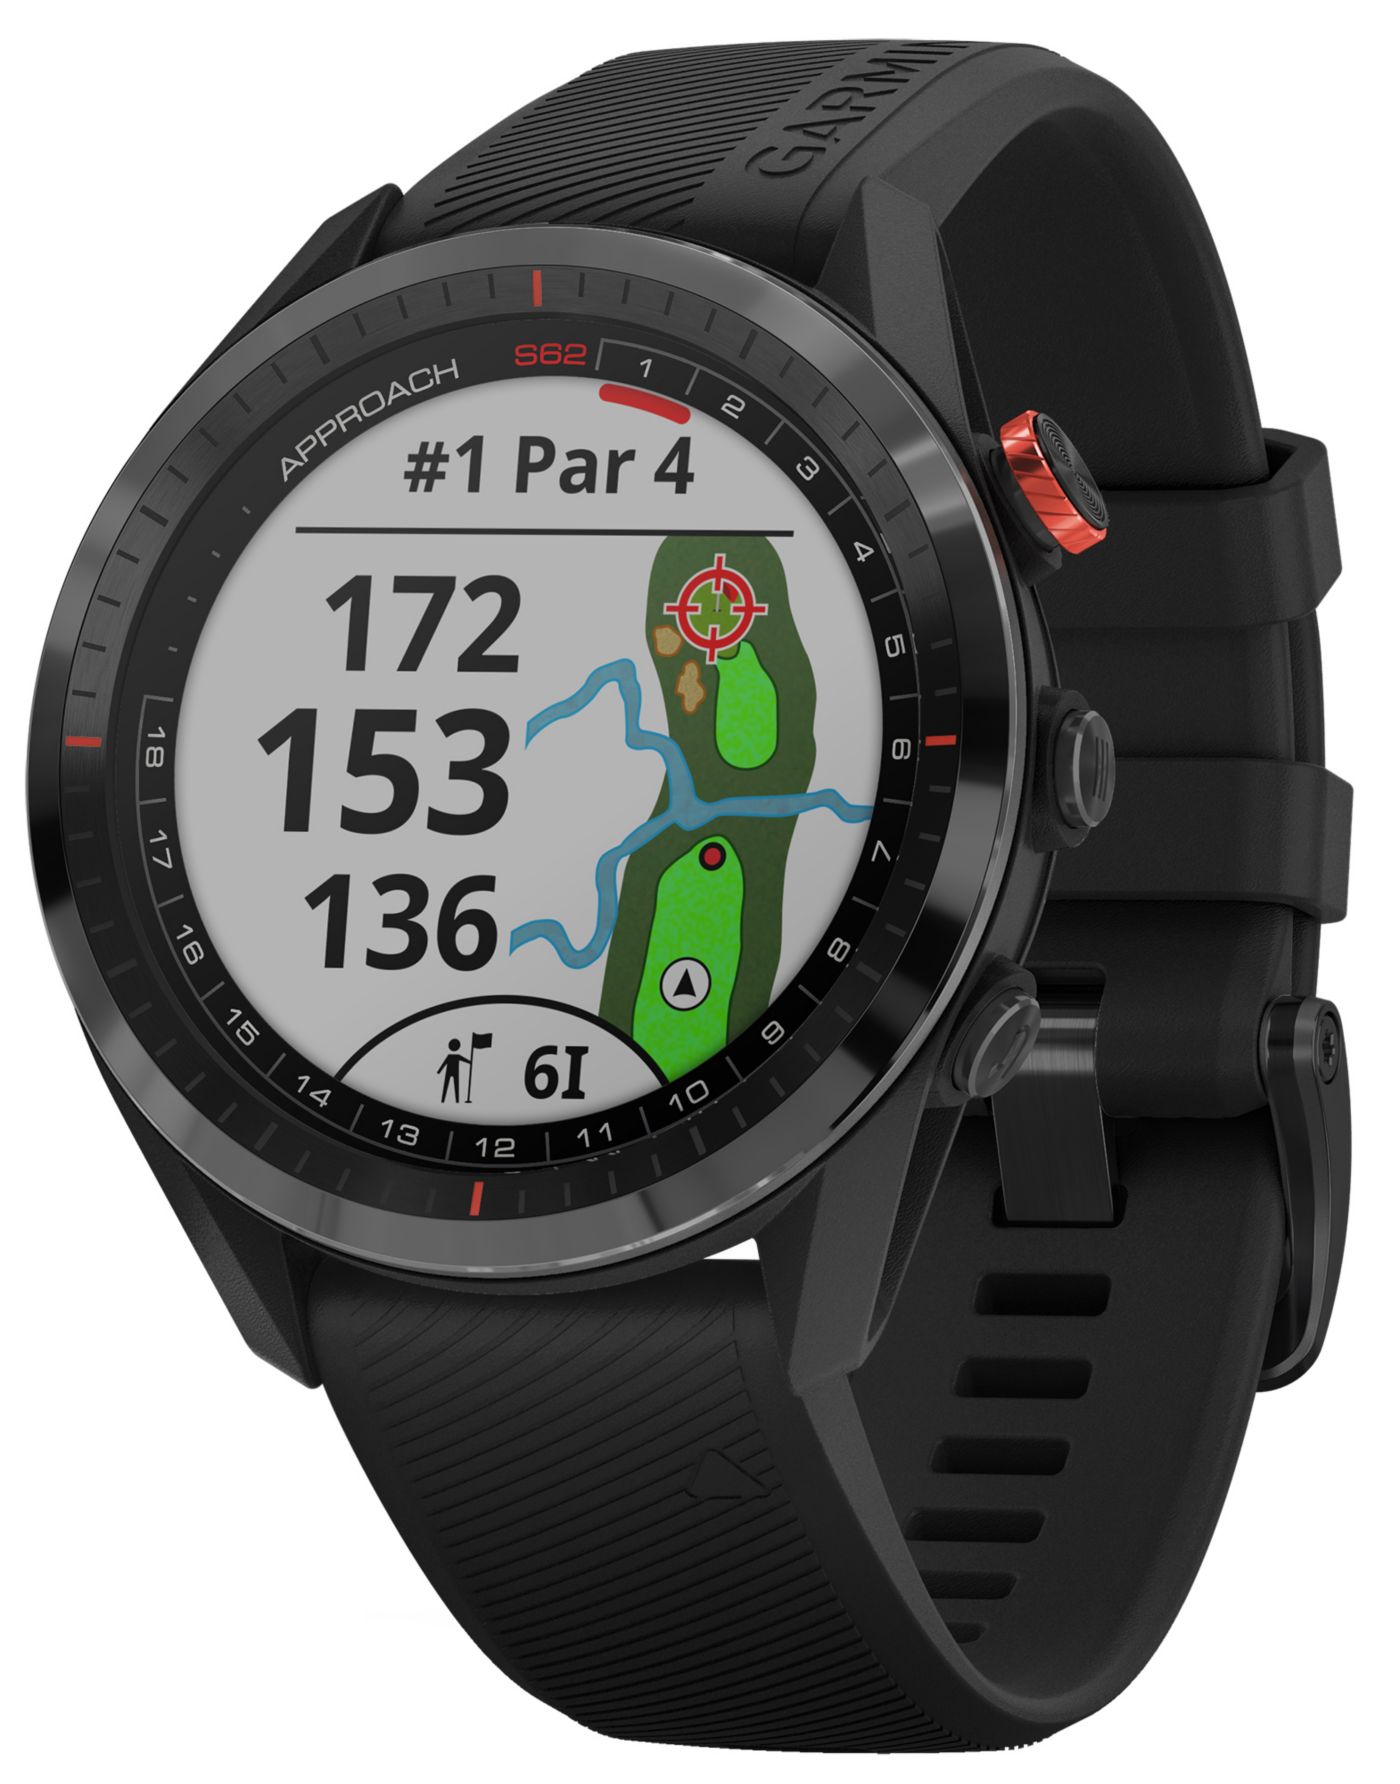 Garmin Approach S62 Premium GPS Golf Watch DICK'S Sporting Goods